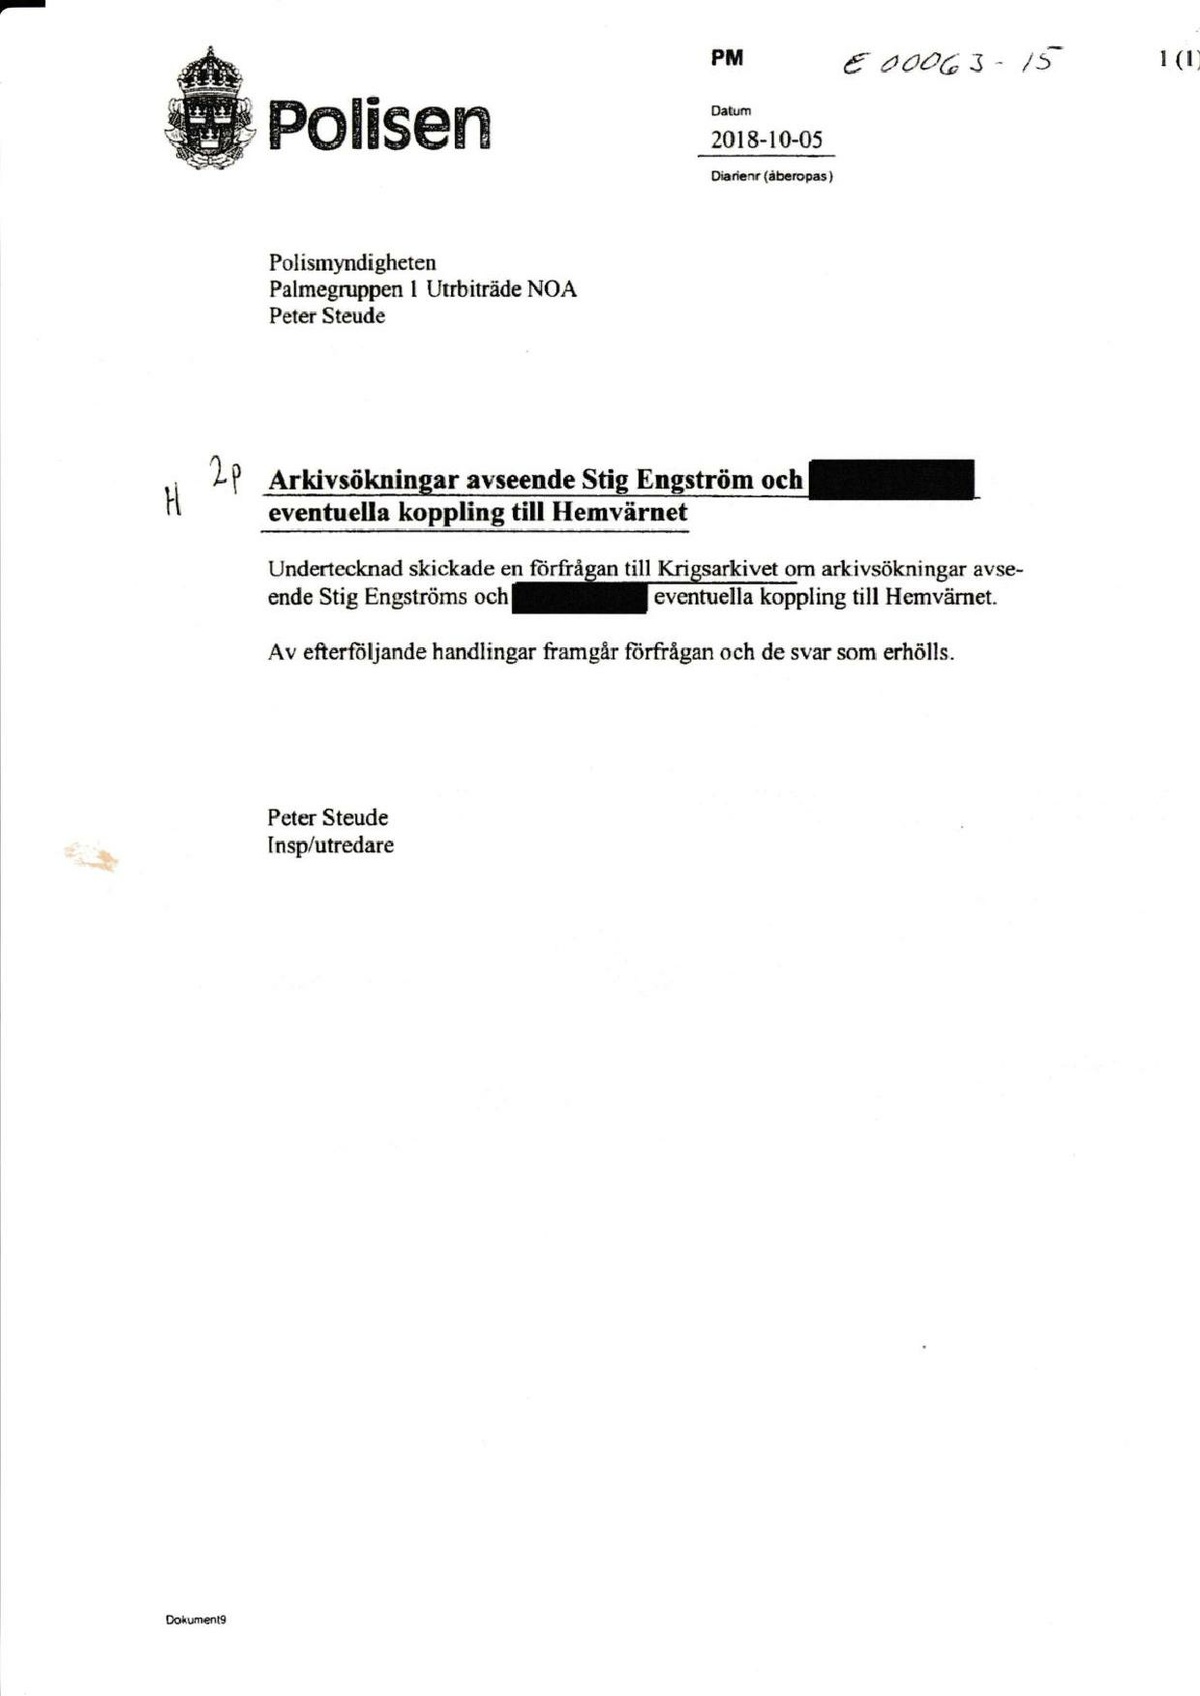 Pol-2018-10-05 E63-15 Arkivsökning ang. Stig Engströms ev. koppling till Hemvärnet.pdf